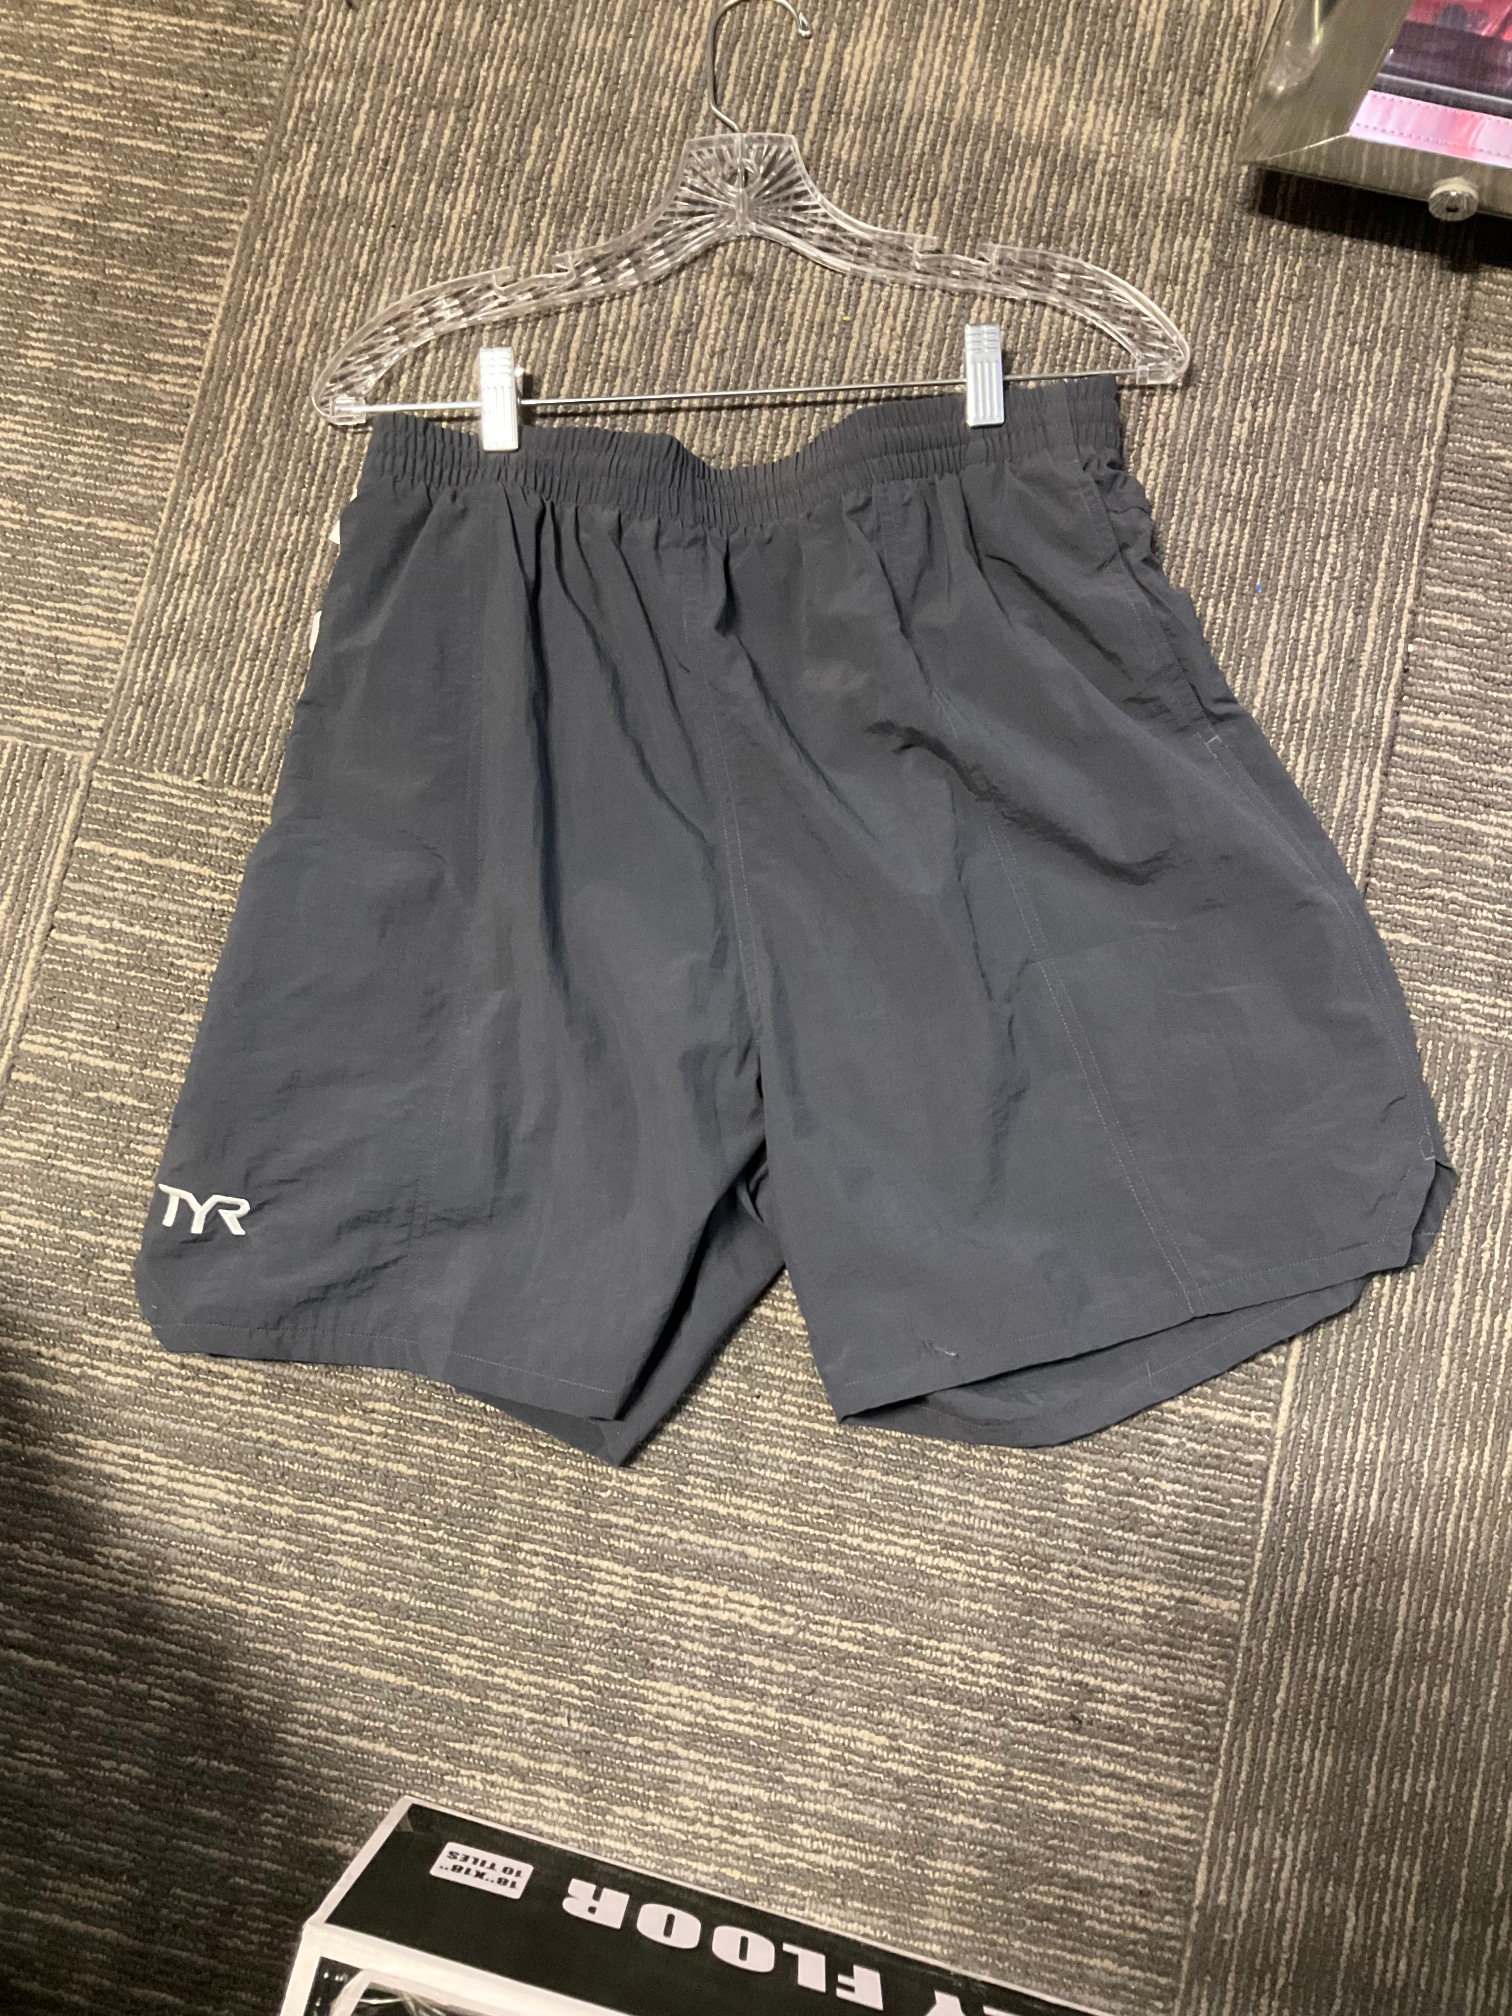 Gray New Large Men's TYR Swimsuit